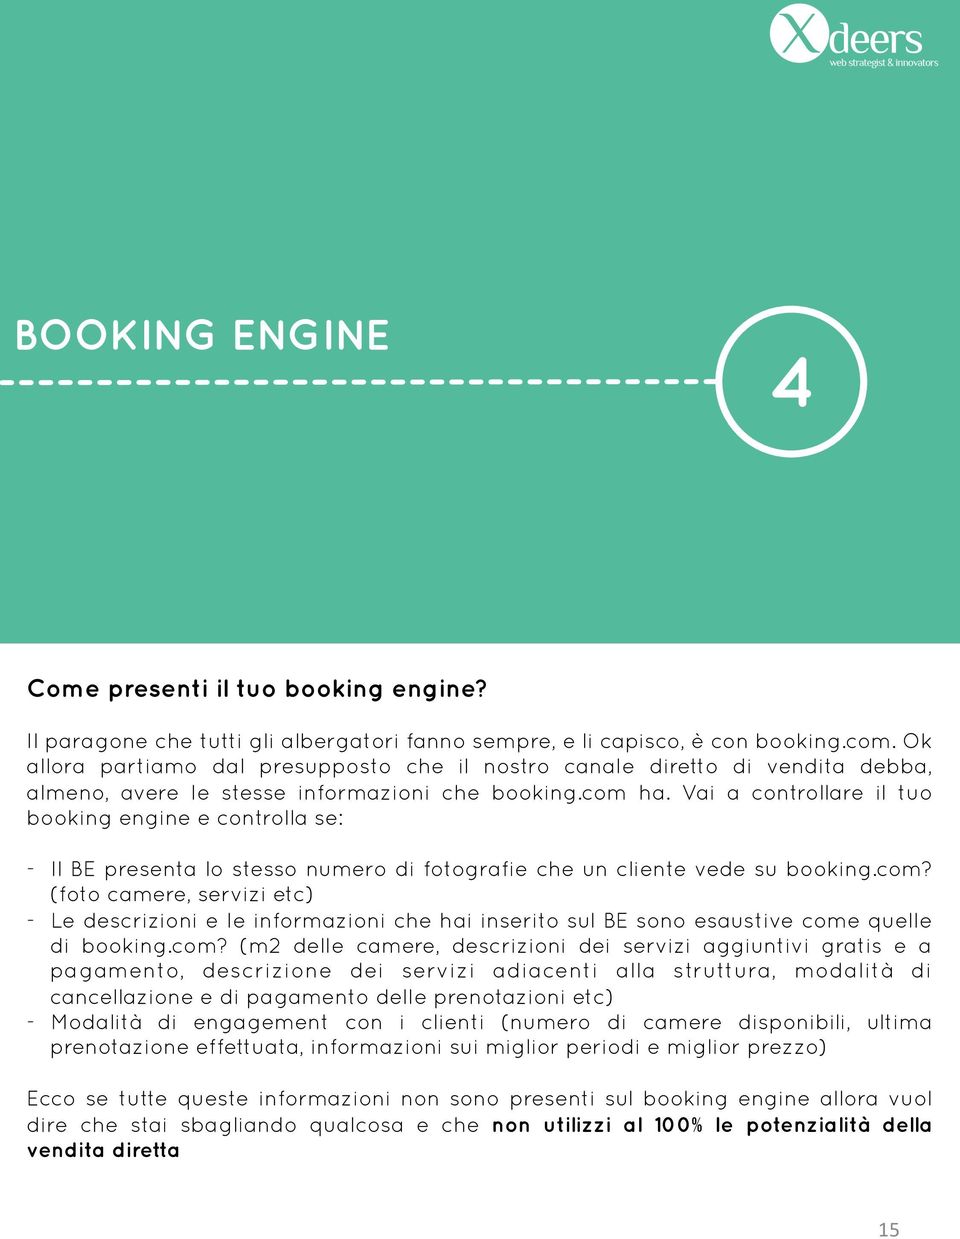 Vai a controllare il tuo booking engine e controlla se: - Il BE presenta lo stesso numero di fotografie che un cliente vede su booking.com?